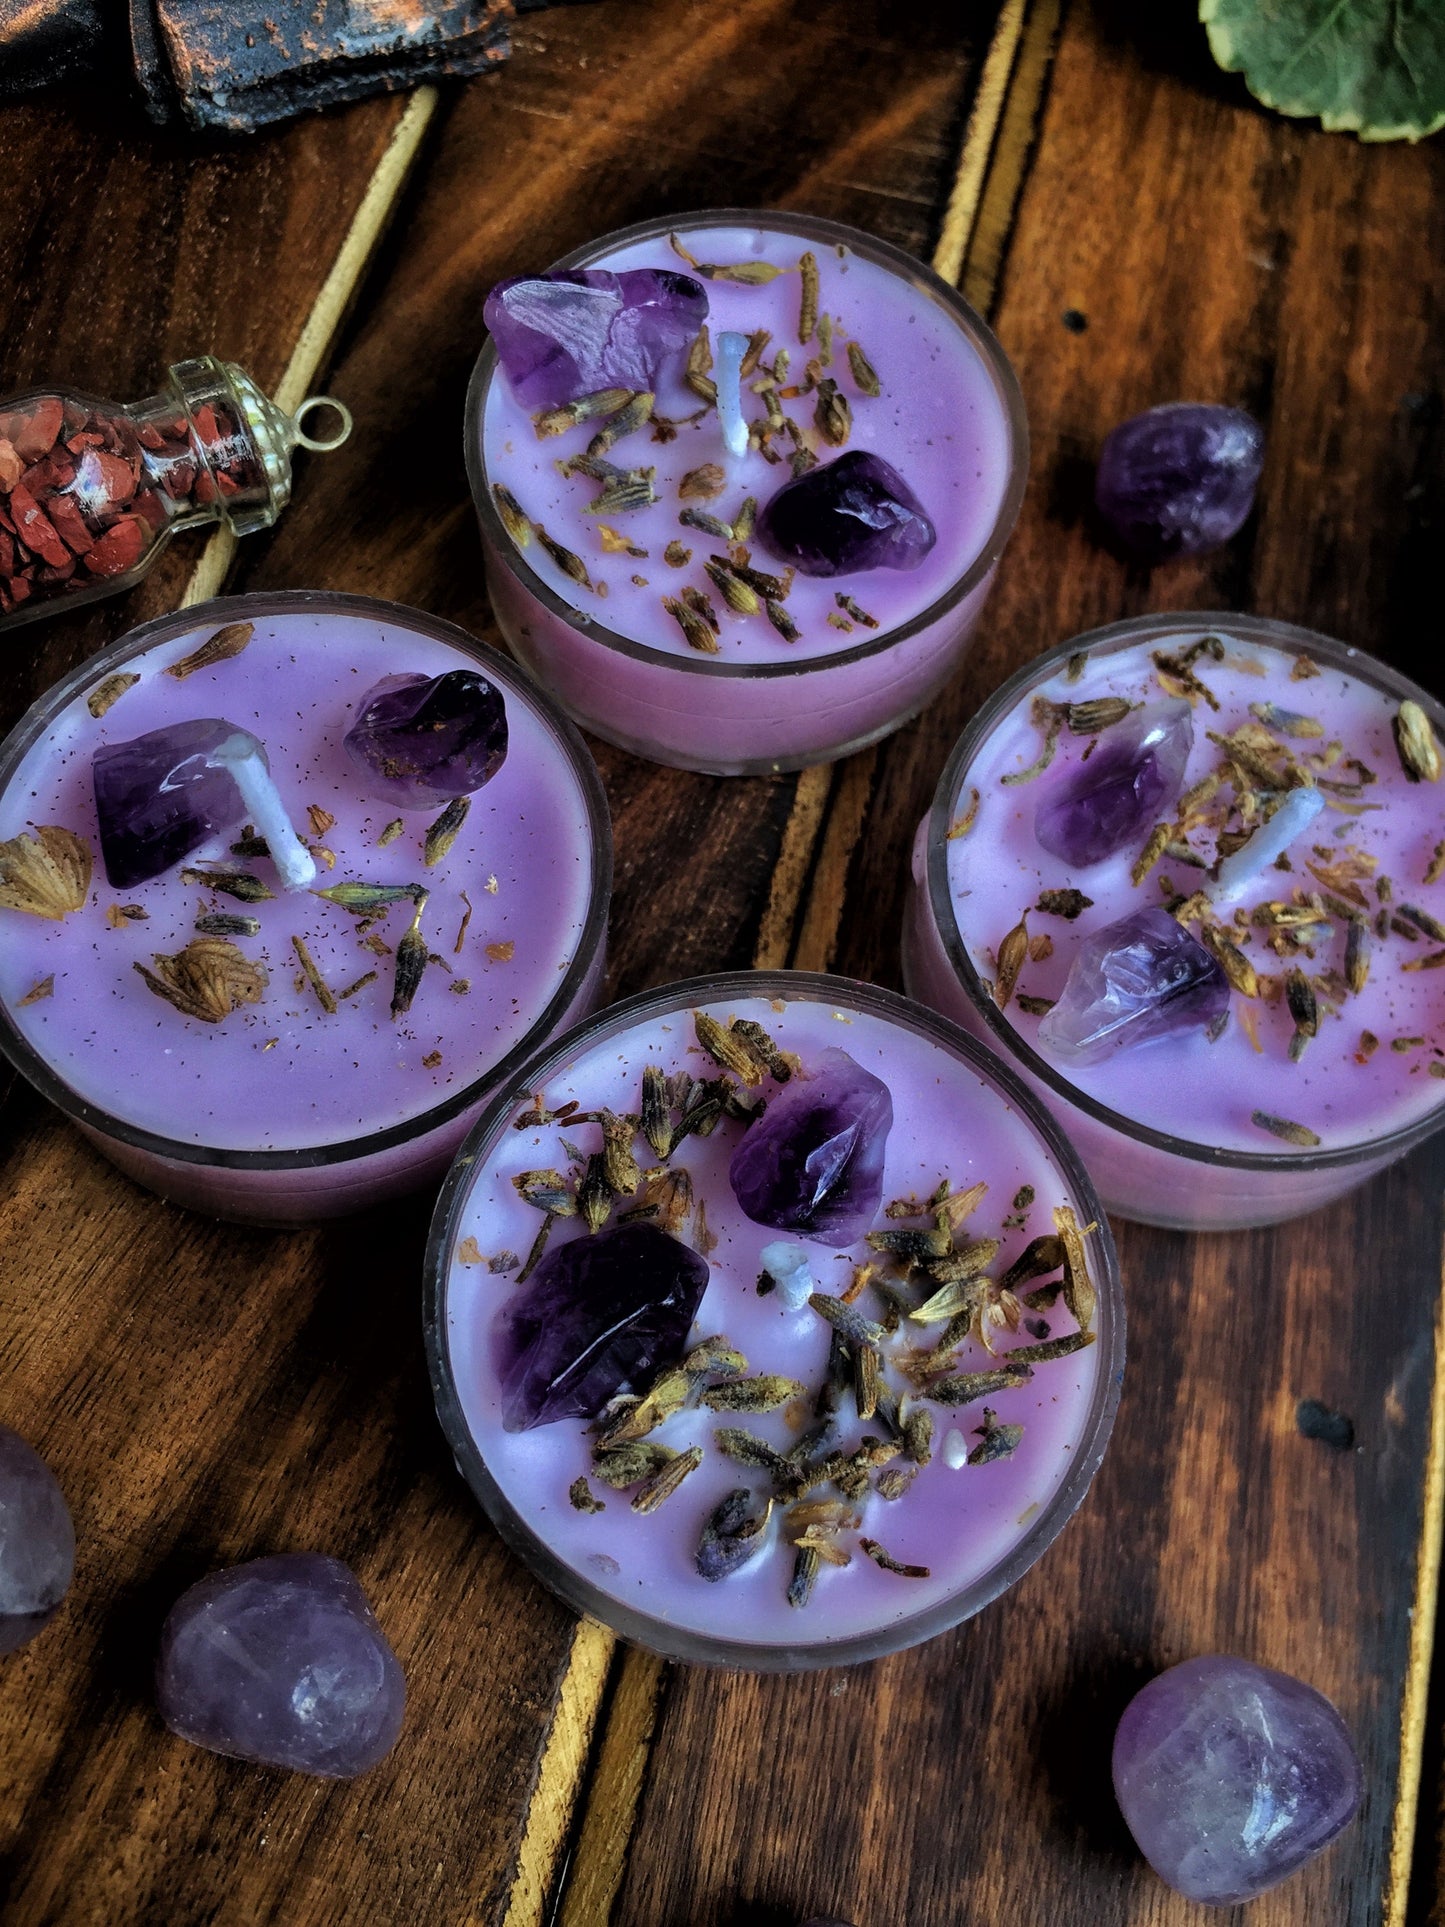 Lavender Scented Tea Light Candles - Lavender & Amethyst - Set of 8